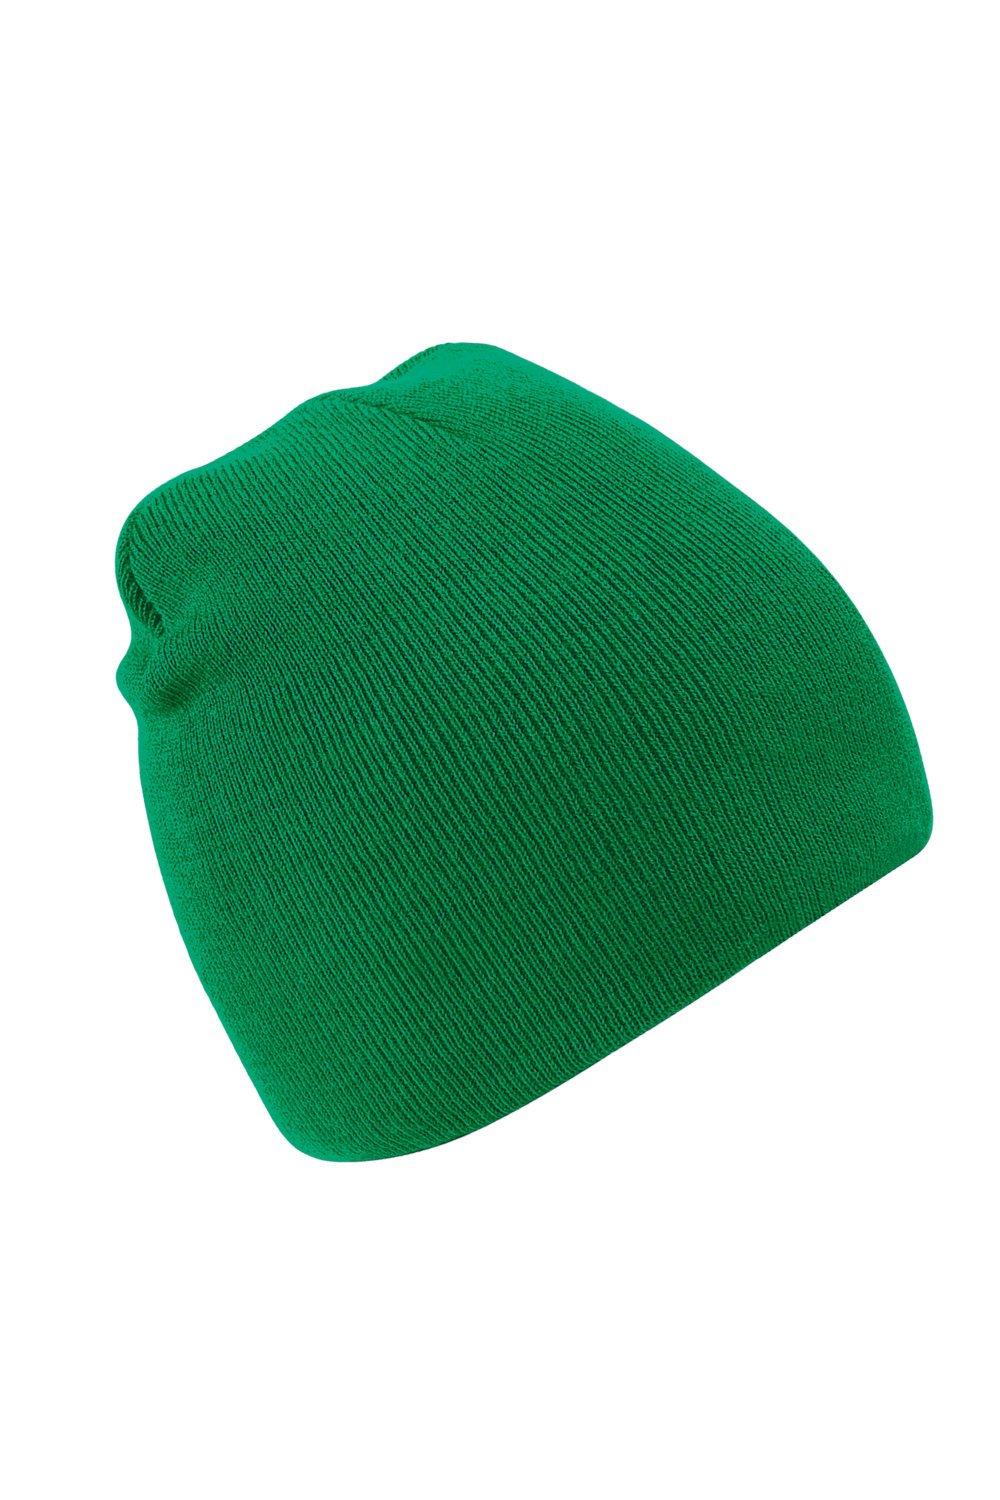 Простая базовая вязаная зимняя шапка-бини Beechfield, зеленый